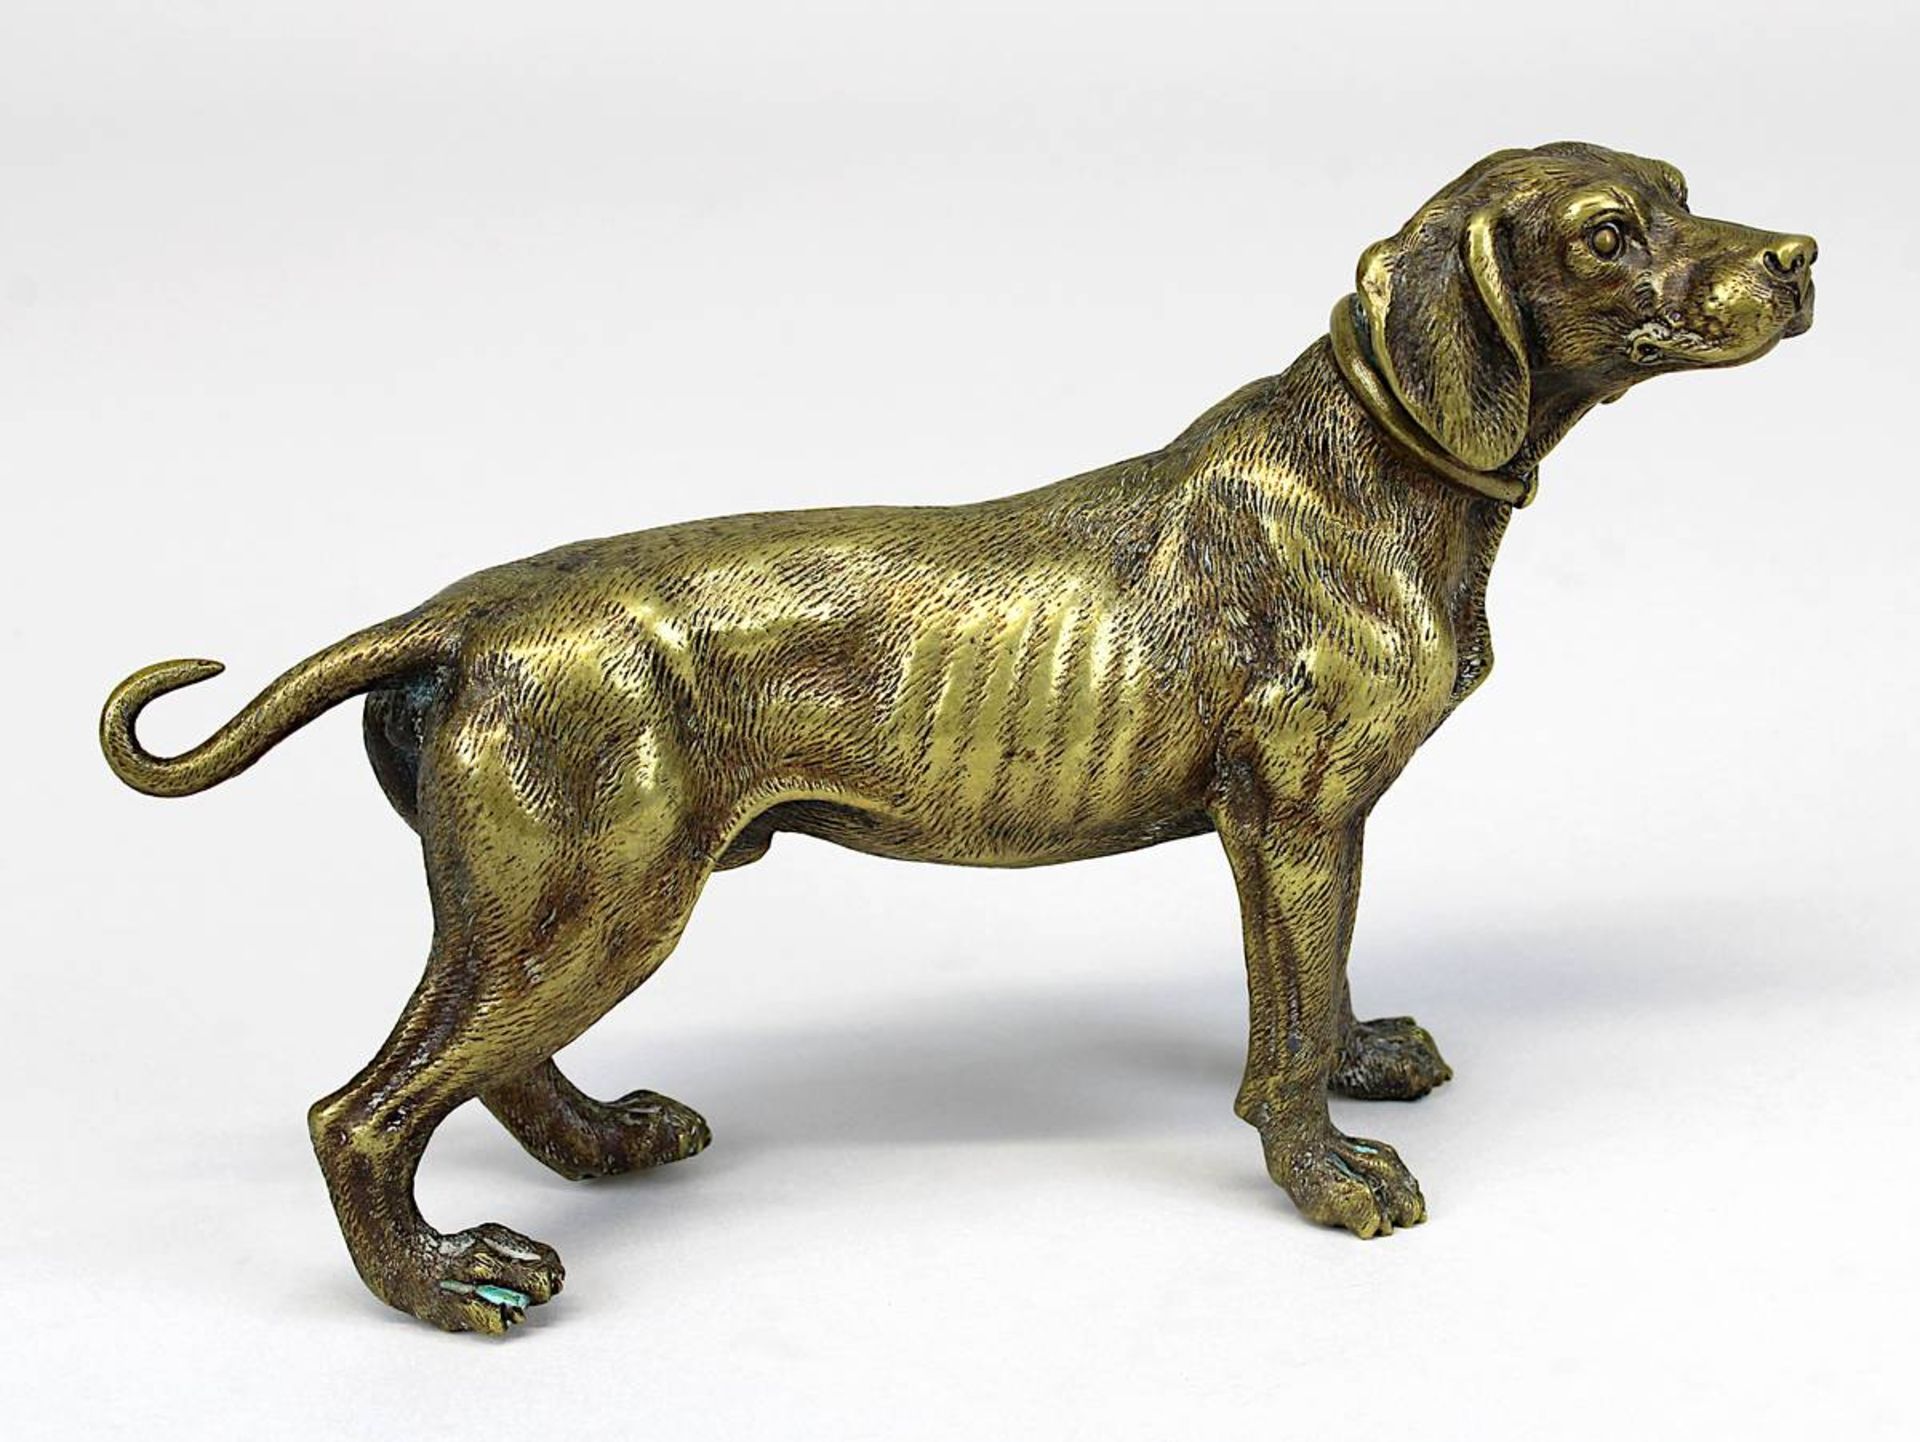 Skulpteur 20. Jh., Jagdhund in aufmerksamer Haltung, Brone mit goldener Patina, auf Unterseite der